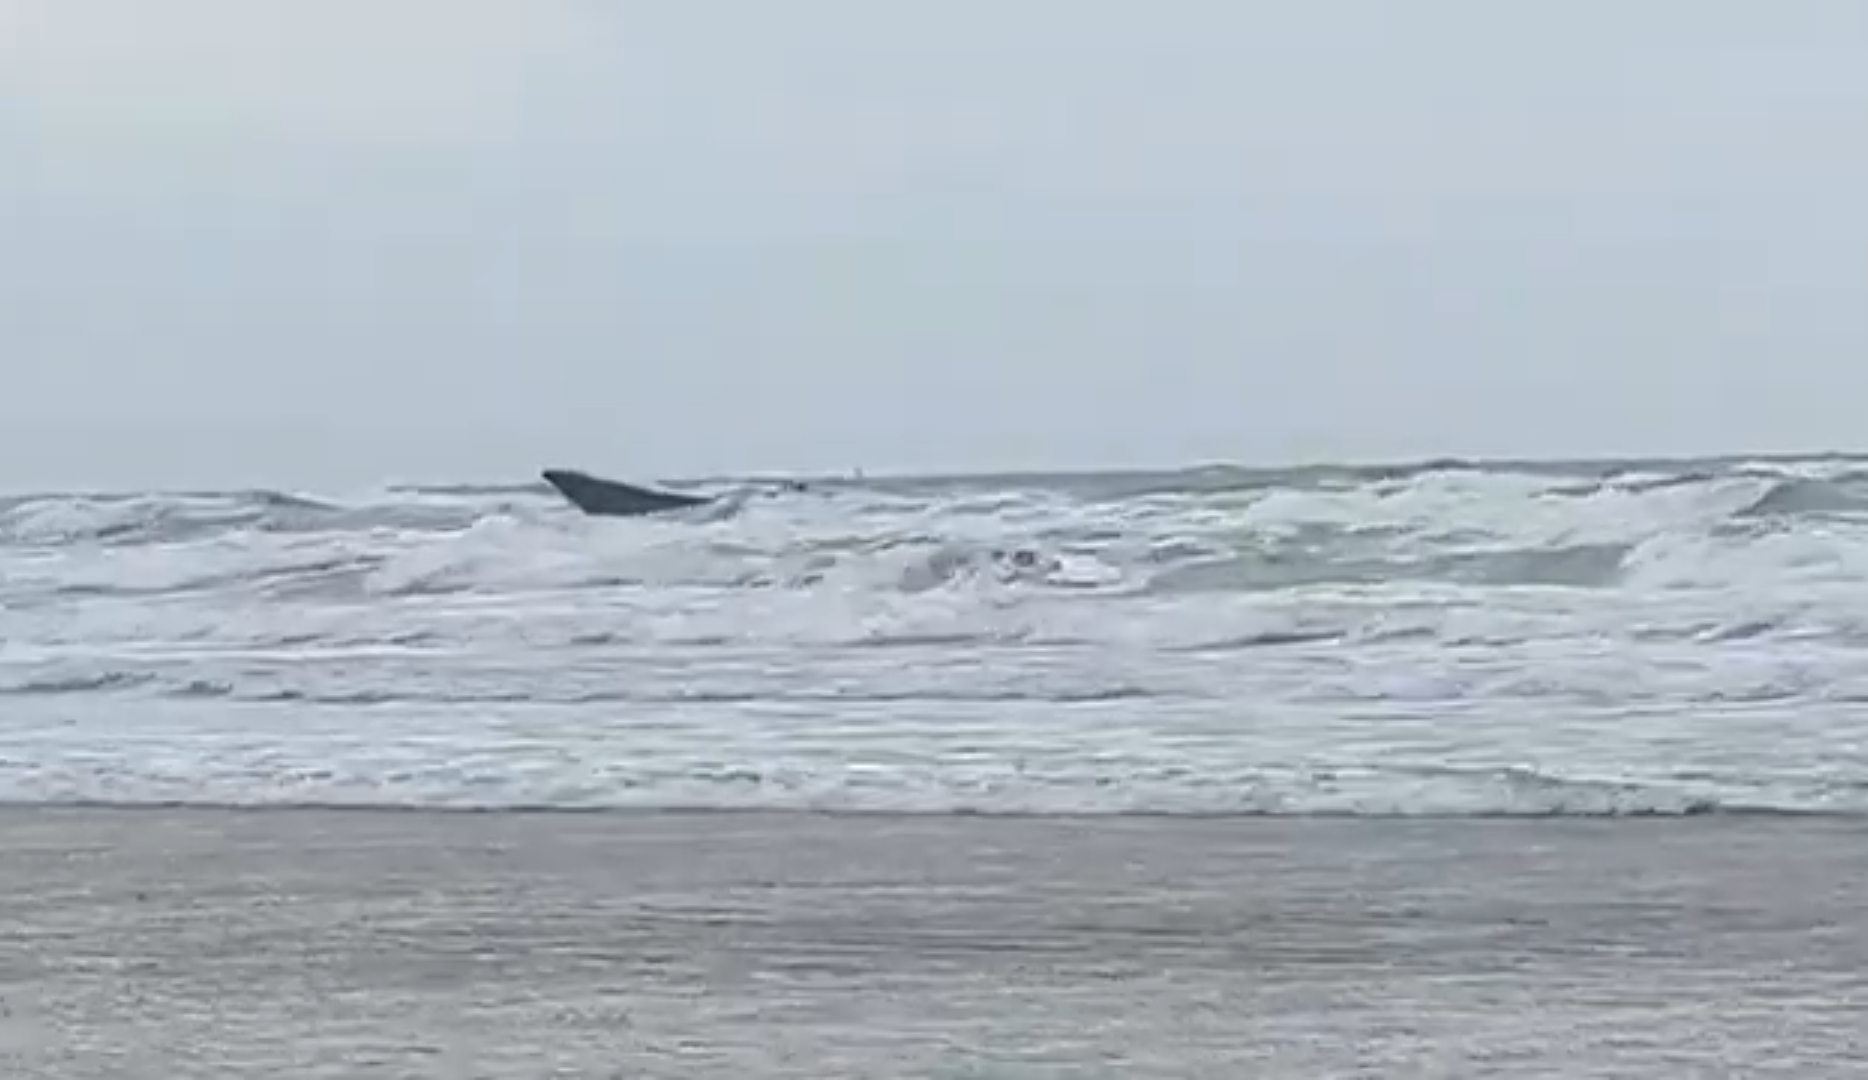 ‘Narcolancha’ aparece varada en la playa de Punta Umbría